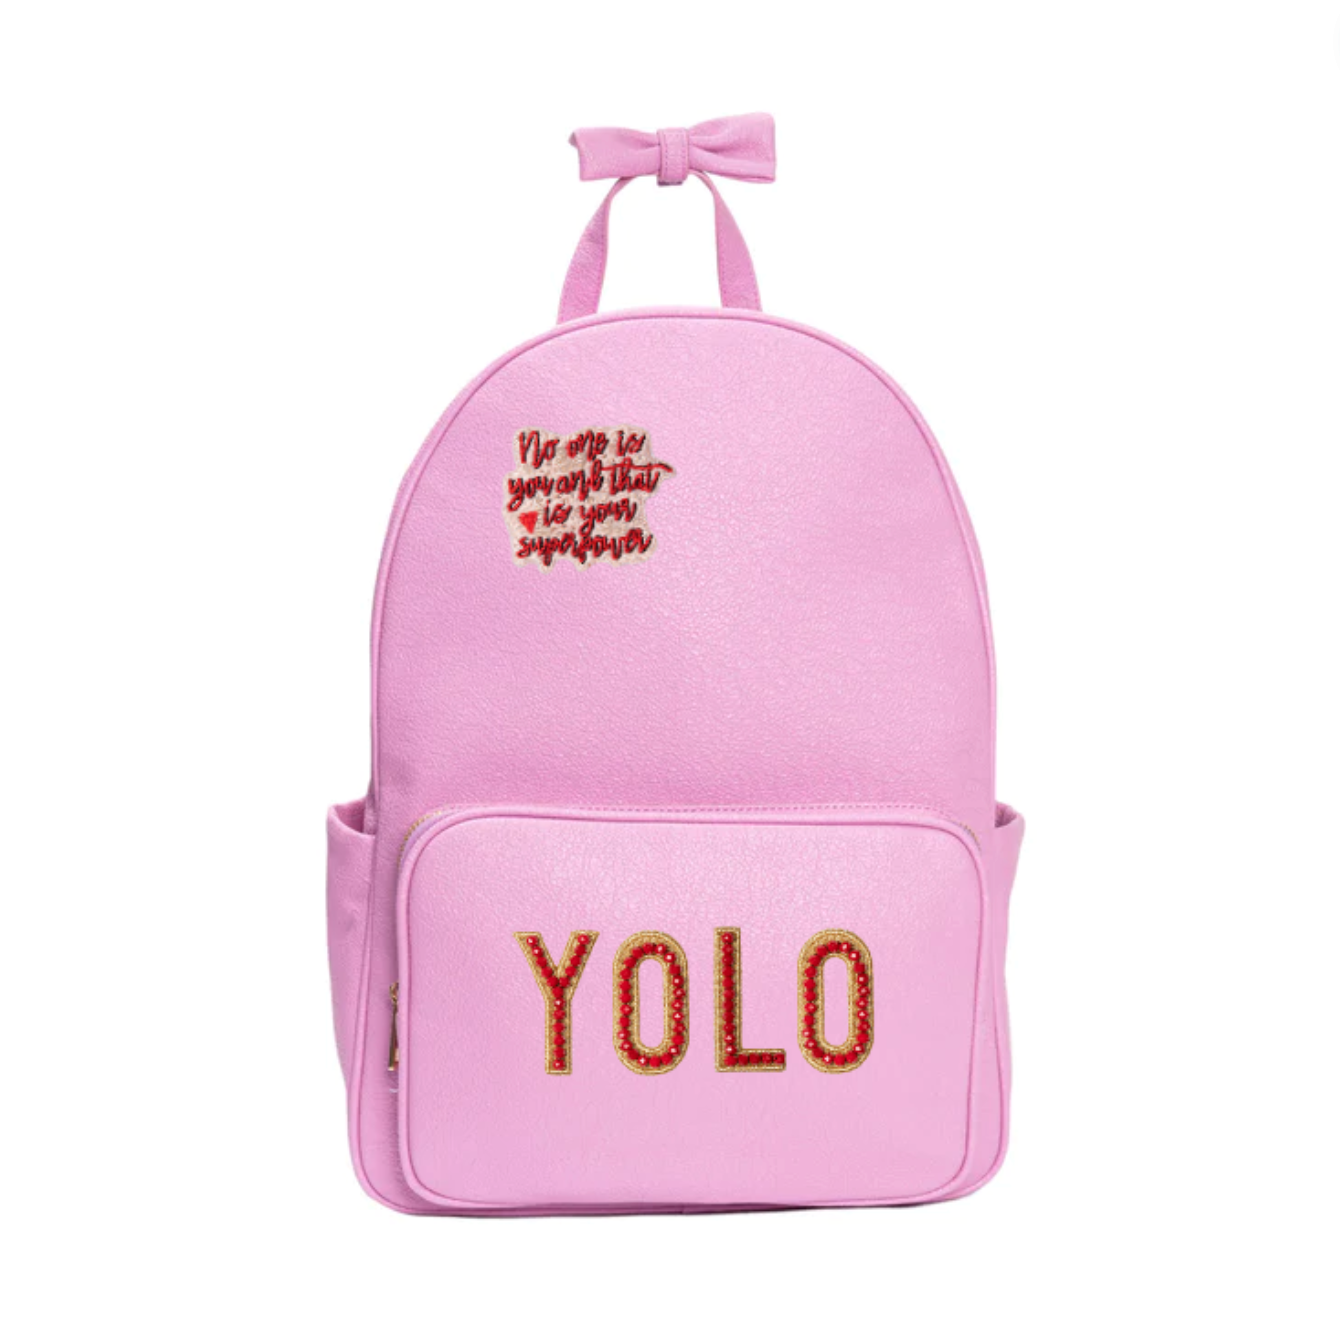 YOLO Backpack